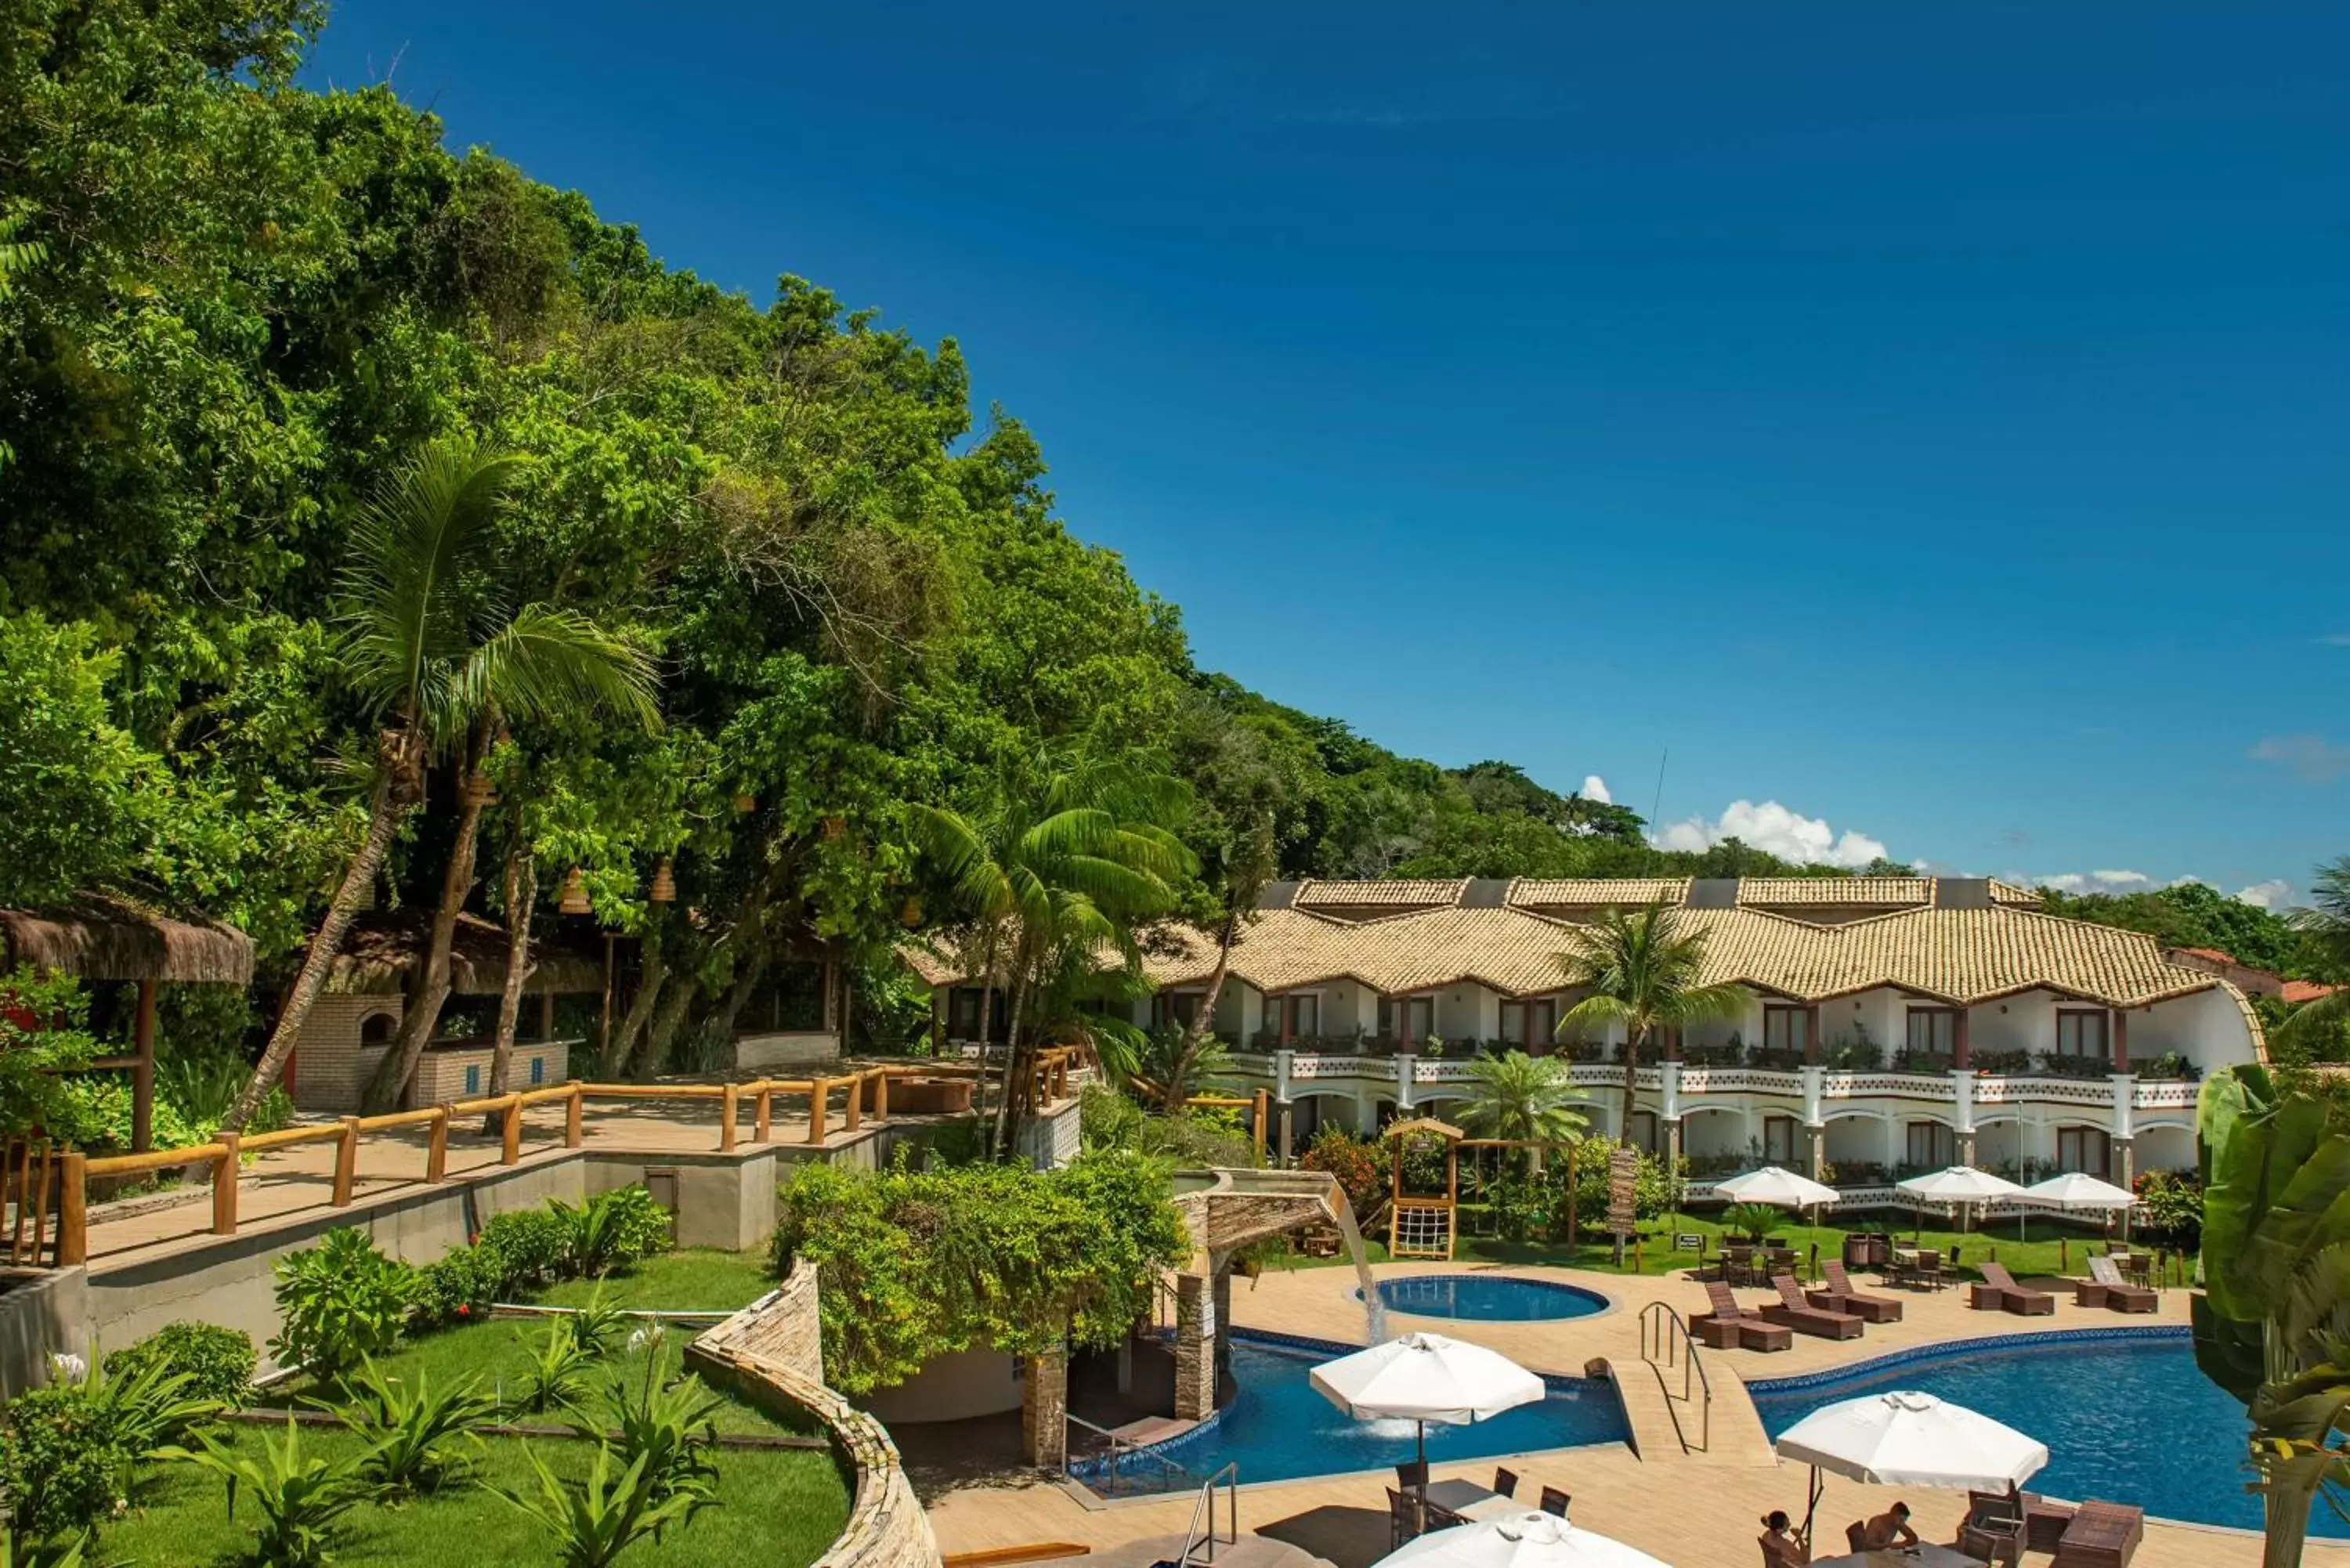 Activities, Pool View in Best Western Shalimar Praia Hotel